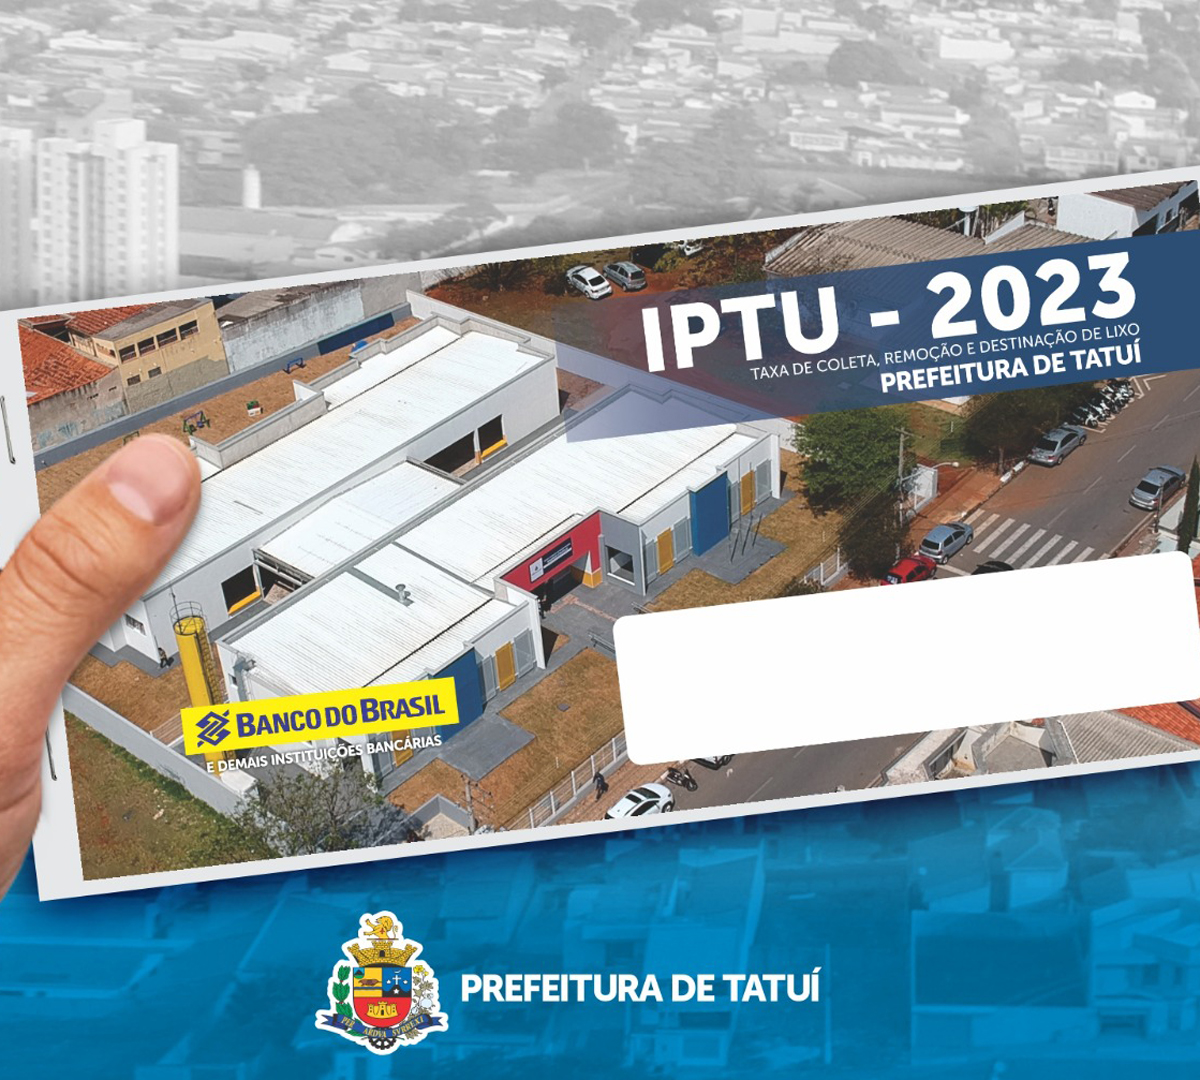 IPTU de Tatuí para o ano de 2023 aponta reajuste de 6,75% - O Progresso de Tatuí